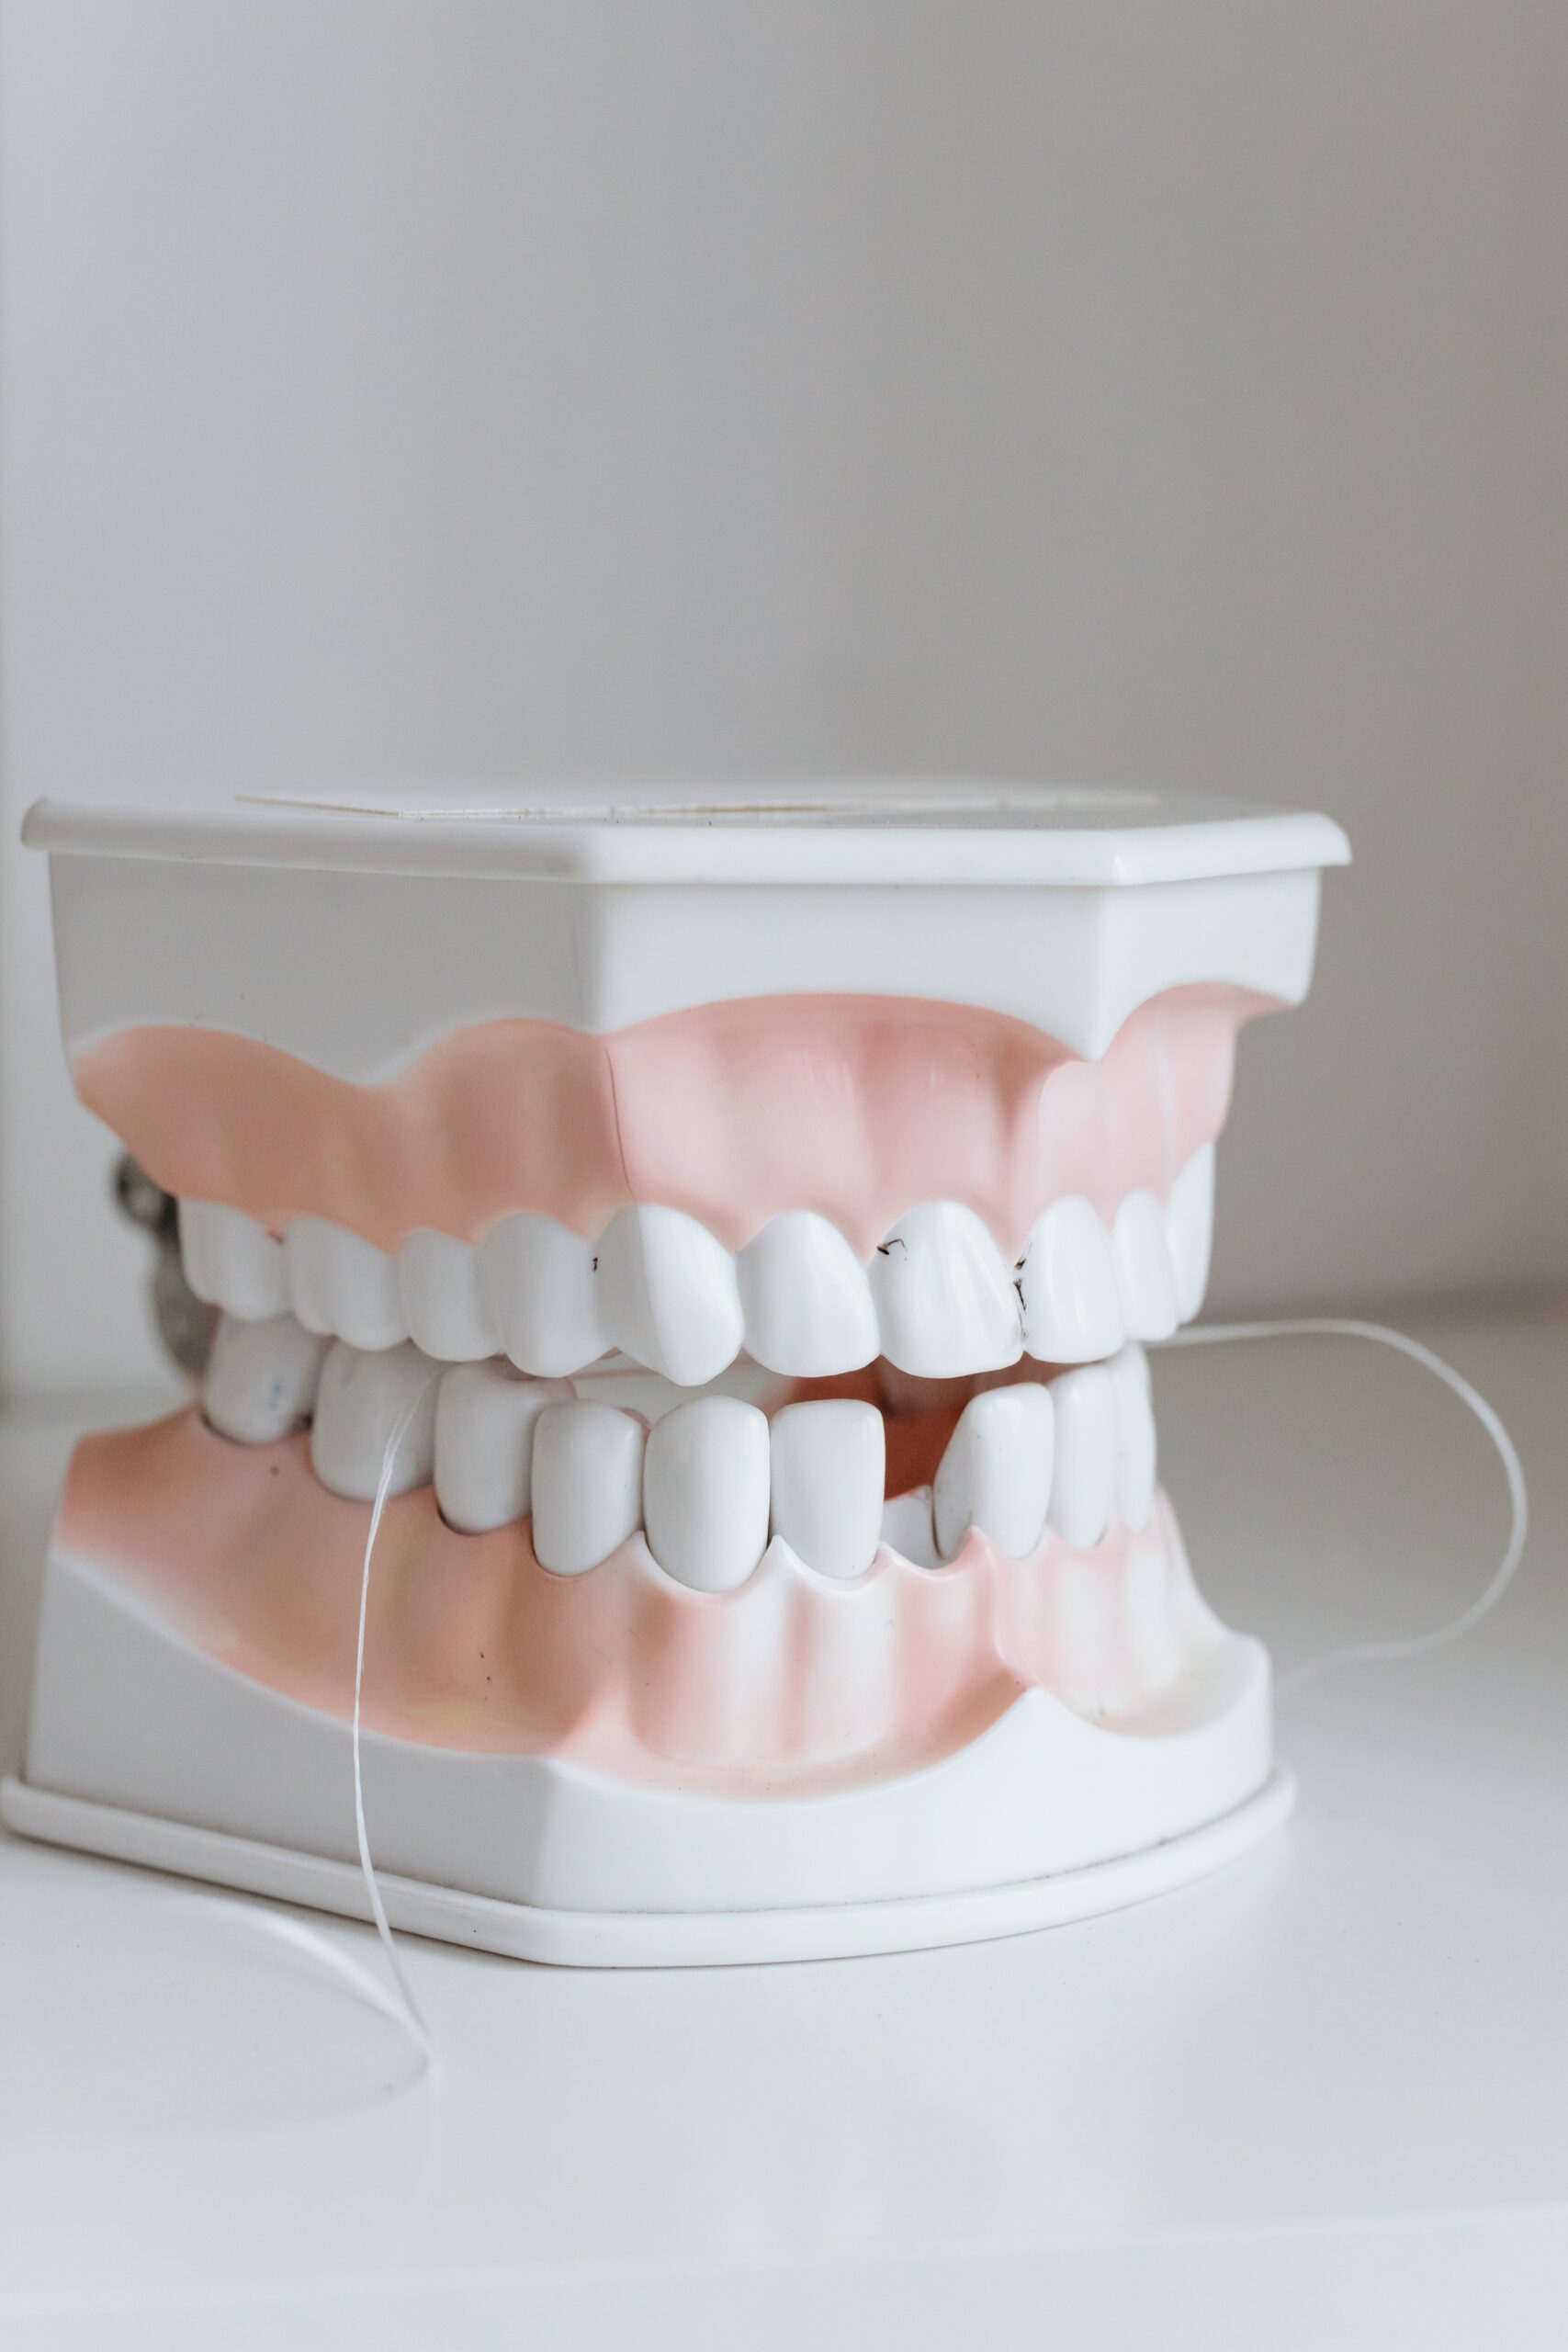 shot of a set of dentures image